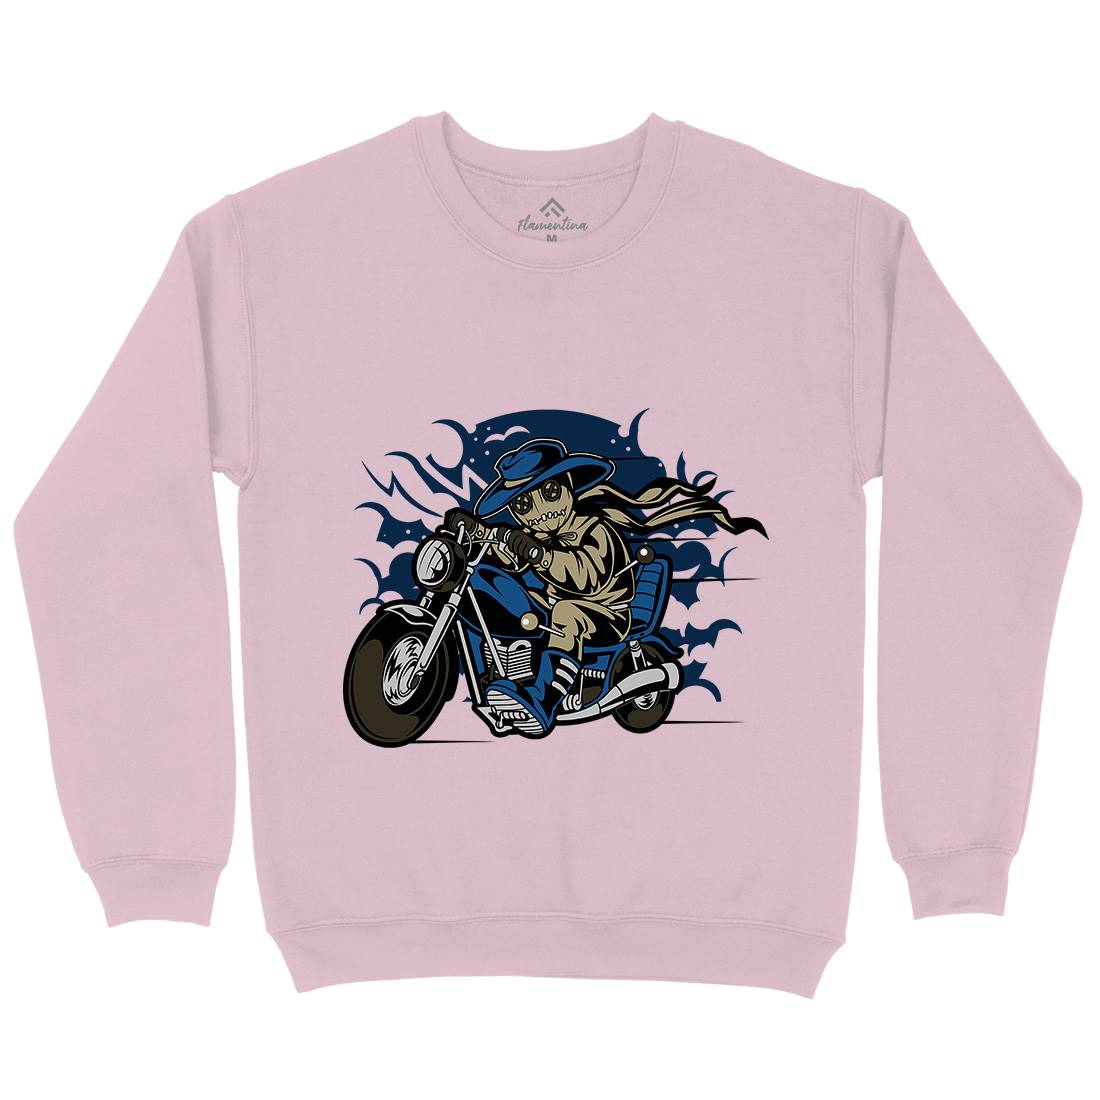 Voodoo Doll Biker Kids Crew Neck Sweatshirt Motorcycles C469